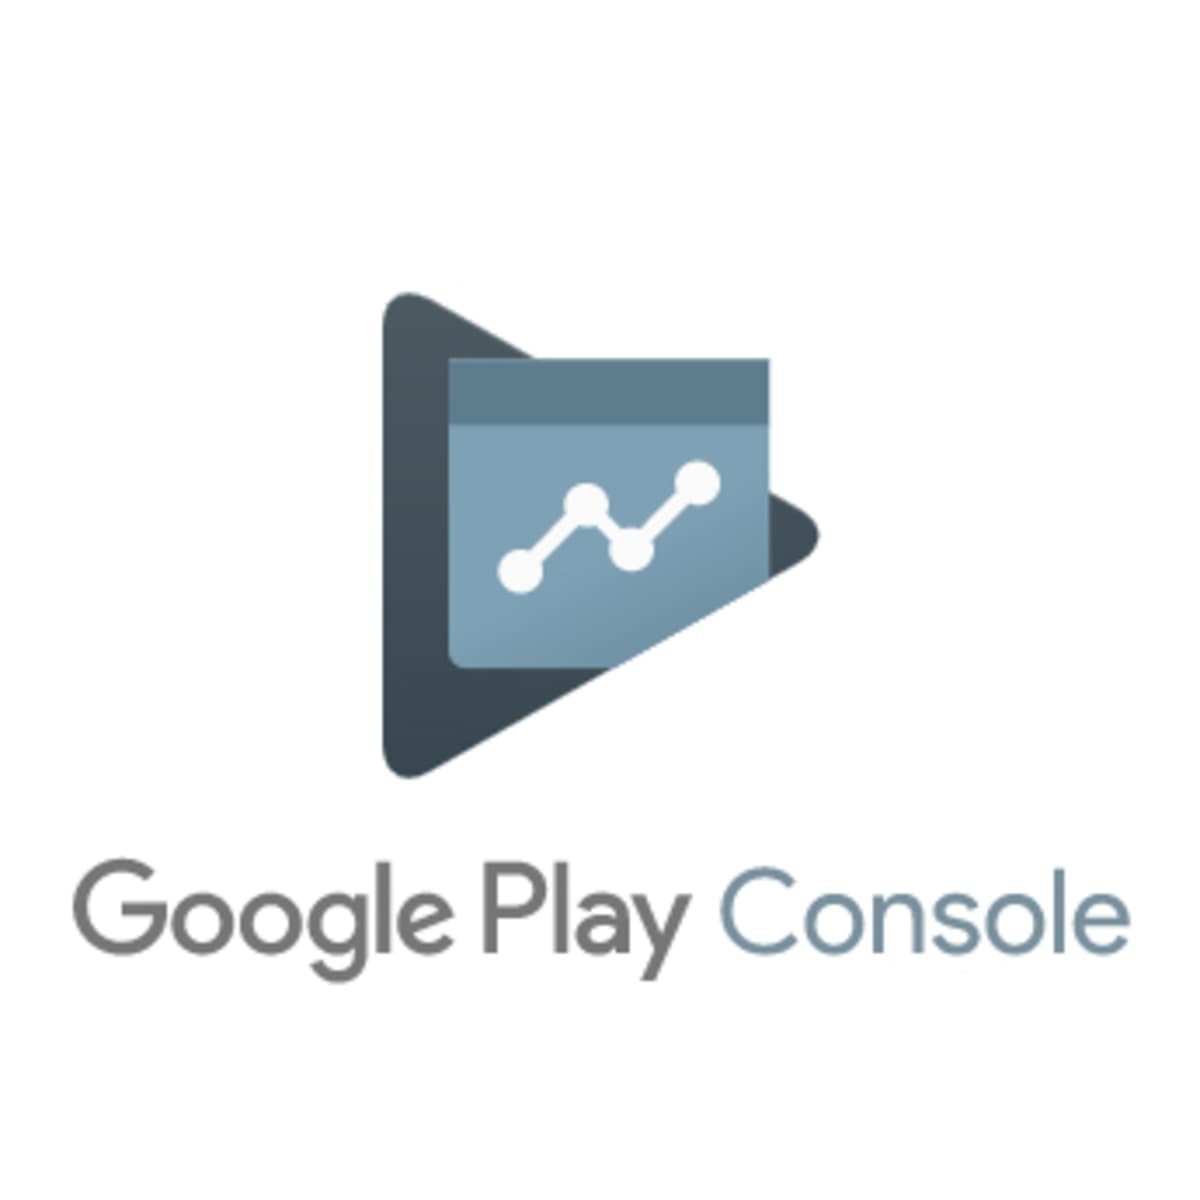 Google play developer console вход. Плей консоль. Google Play Console. Google Play Console developer. Google Play developer Console icon.